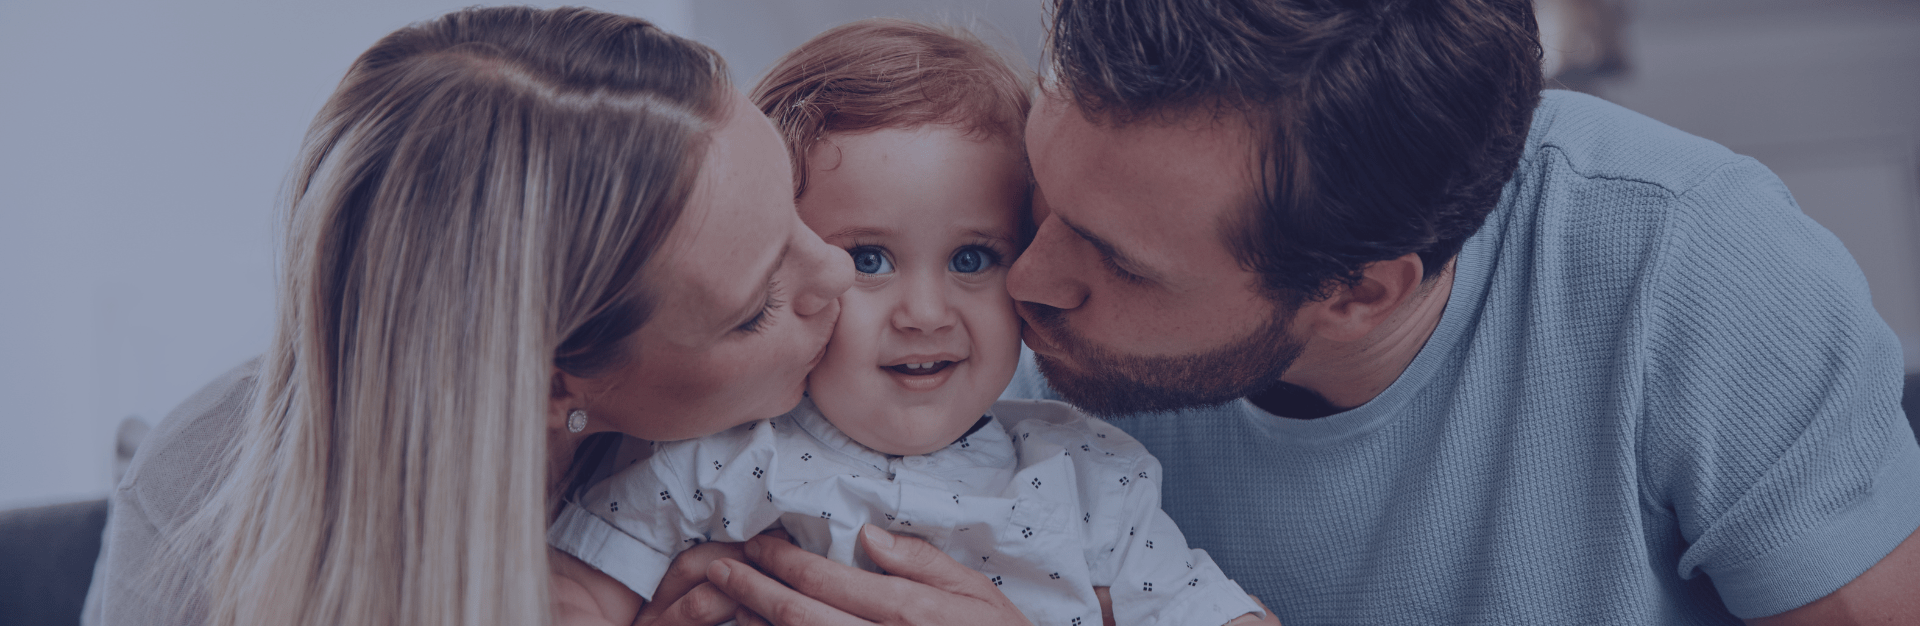 rodzice całujący swoje dziecko poczęte metodą in vitro w Poznaniu